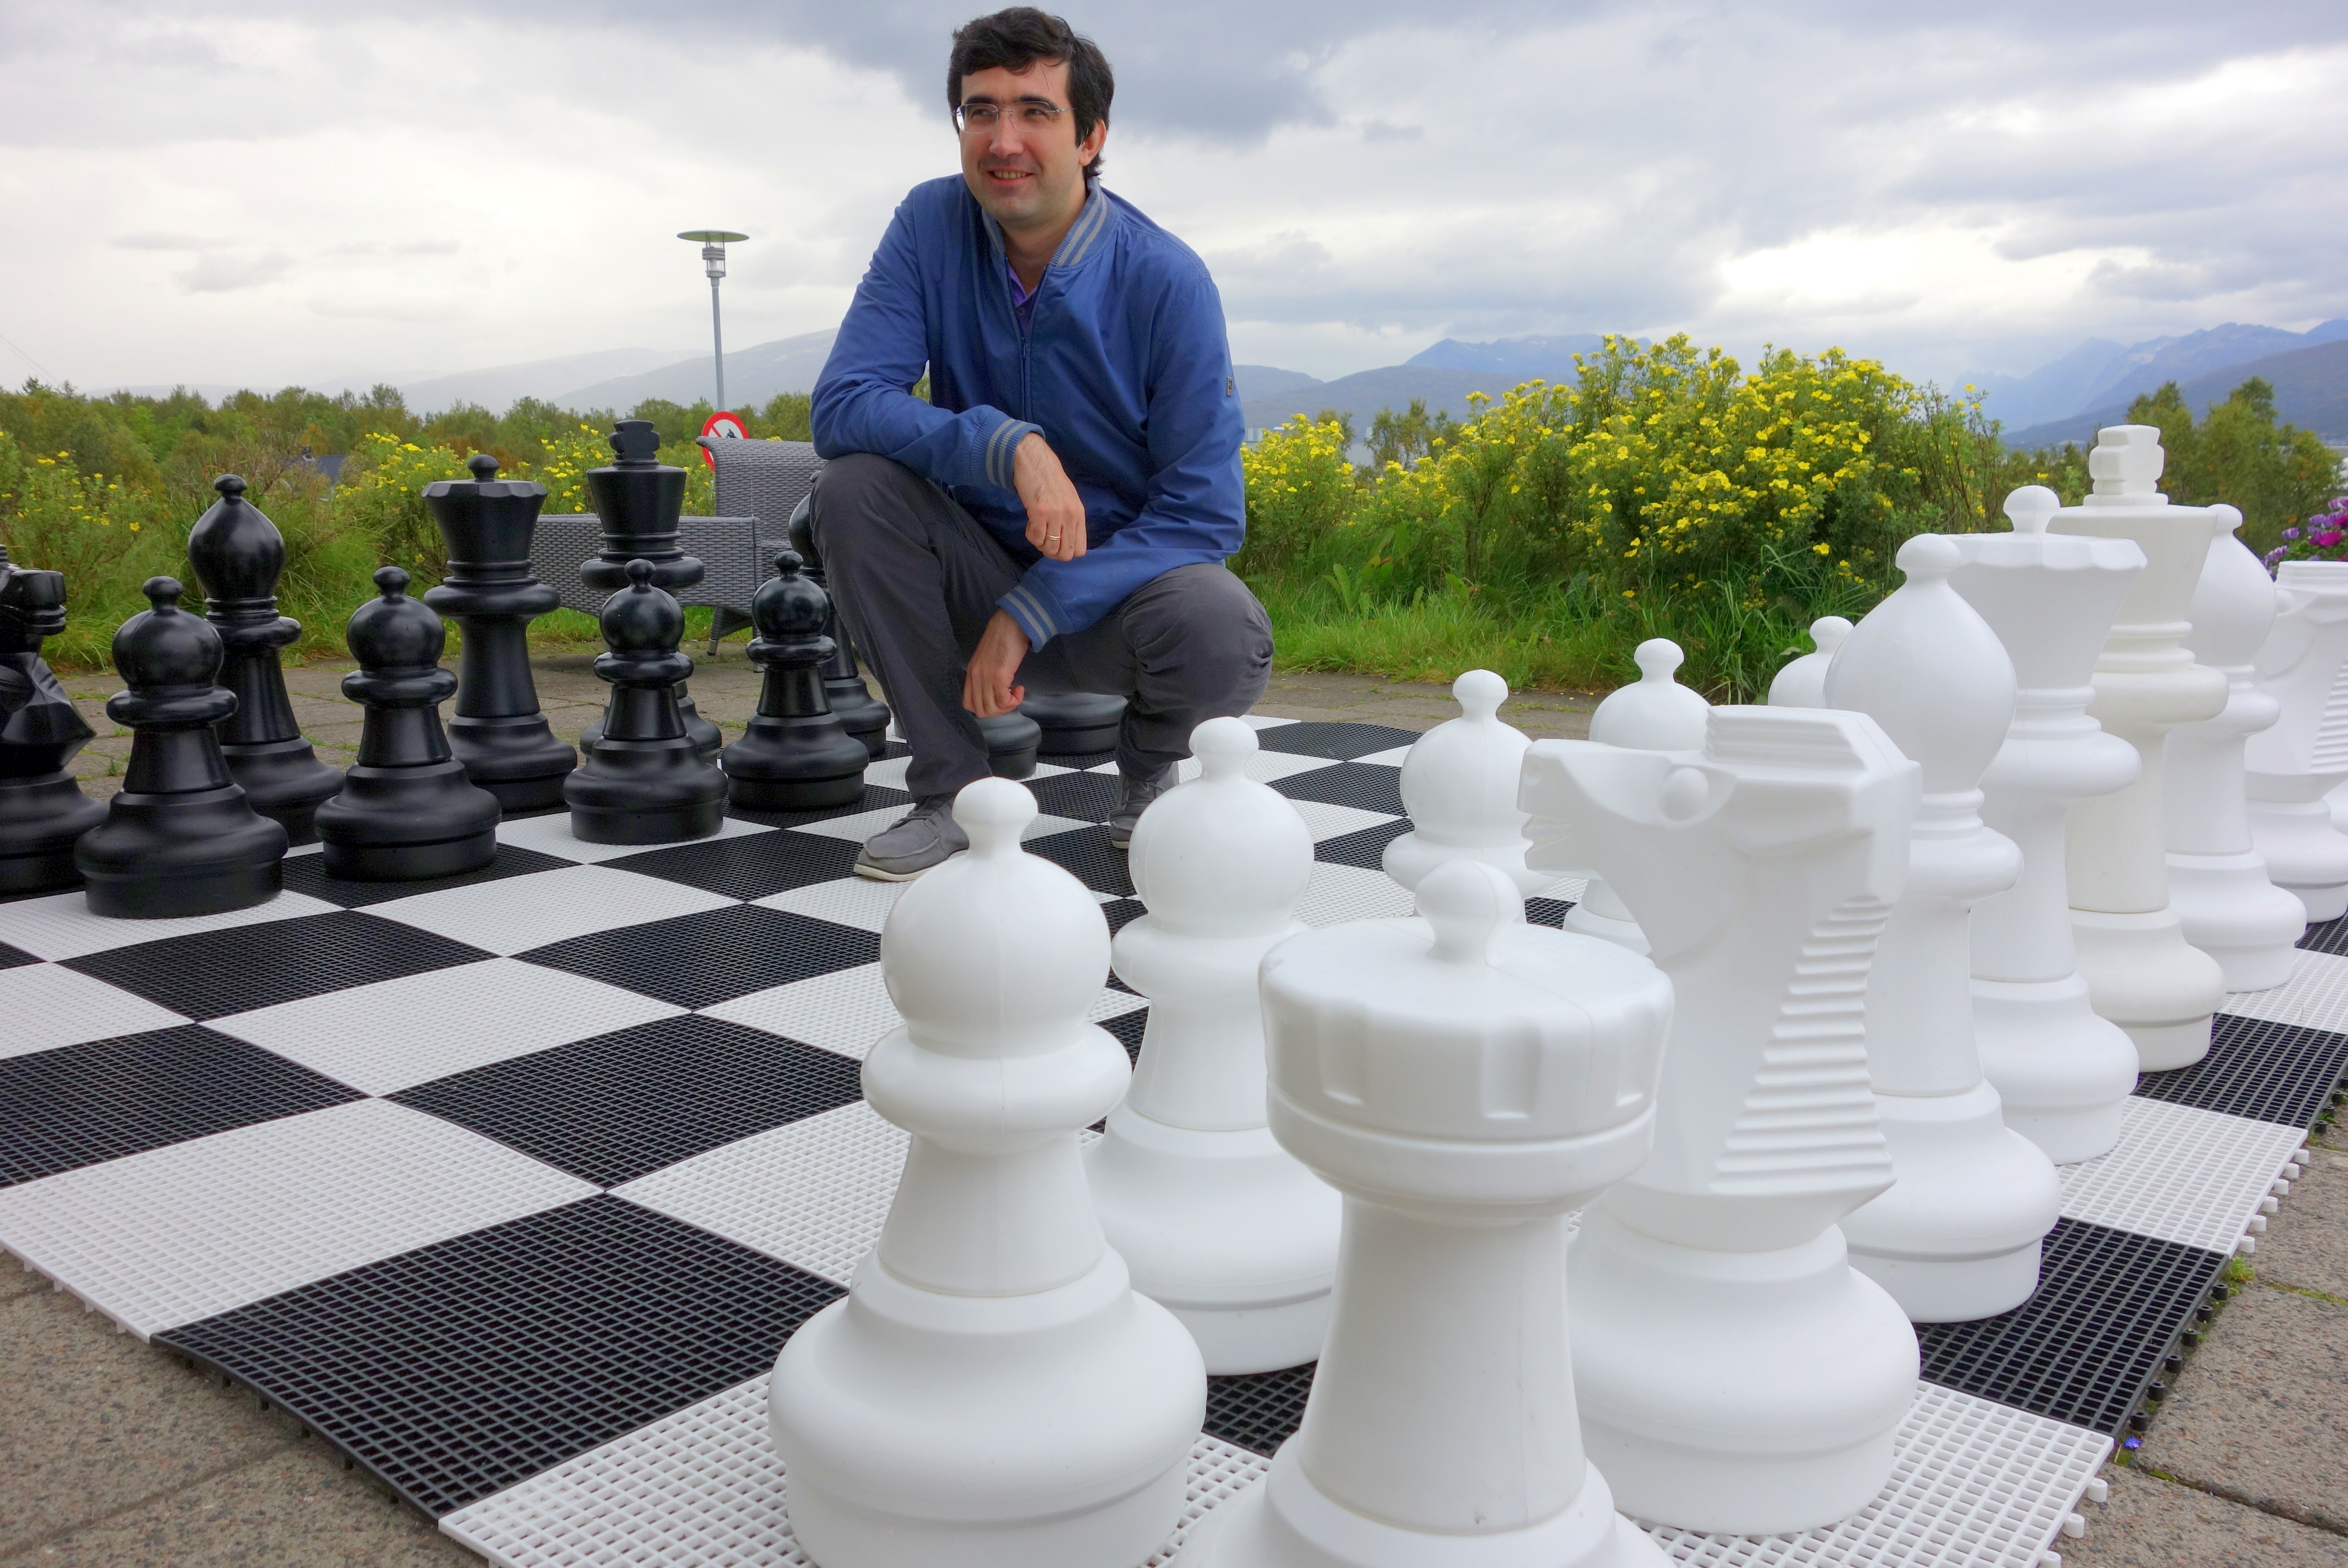 Caruana no Topo em Londres; Carlsen Vence o Grand Chess Tour - Página 6 